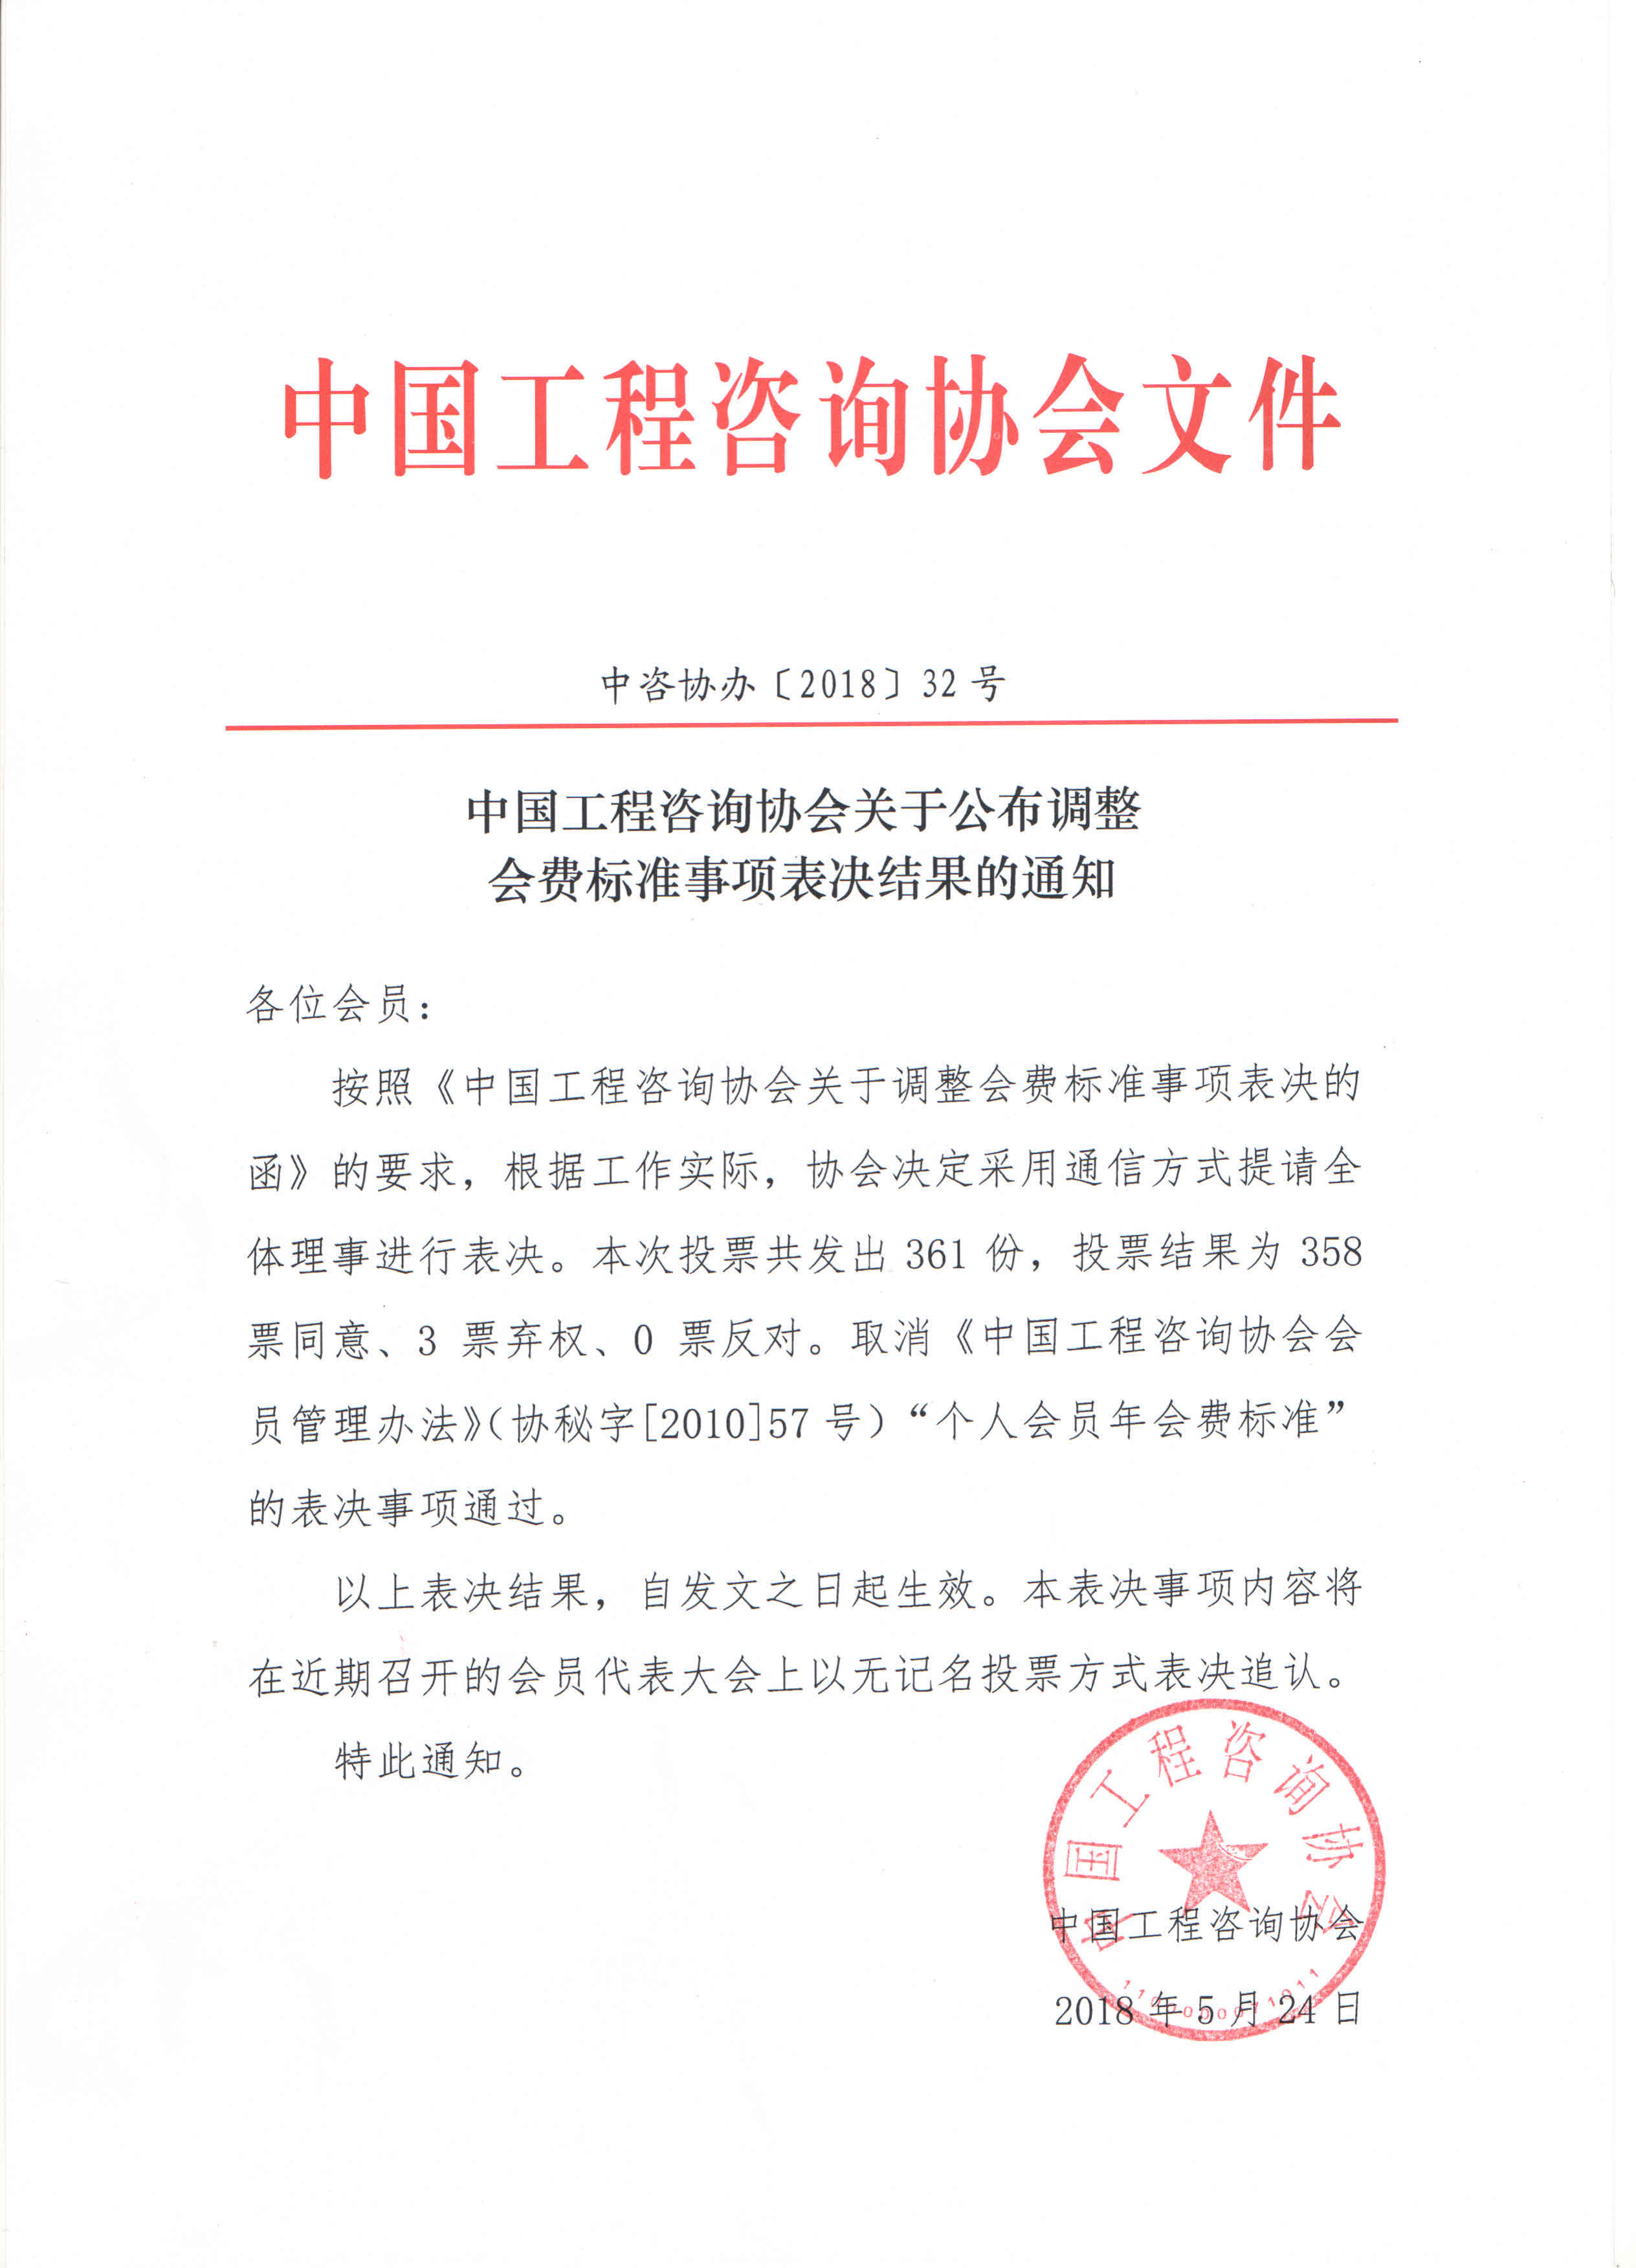 中国工程咨询协会关于公布调整会费标准事项表决结果的通知